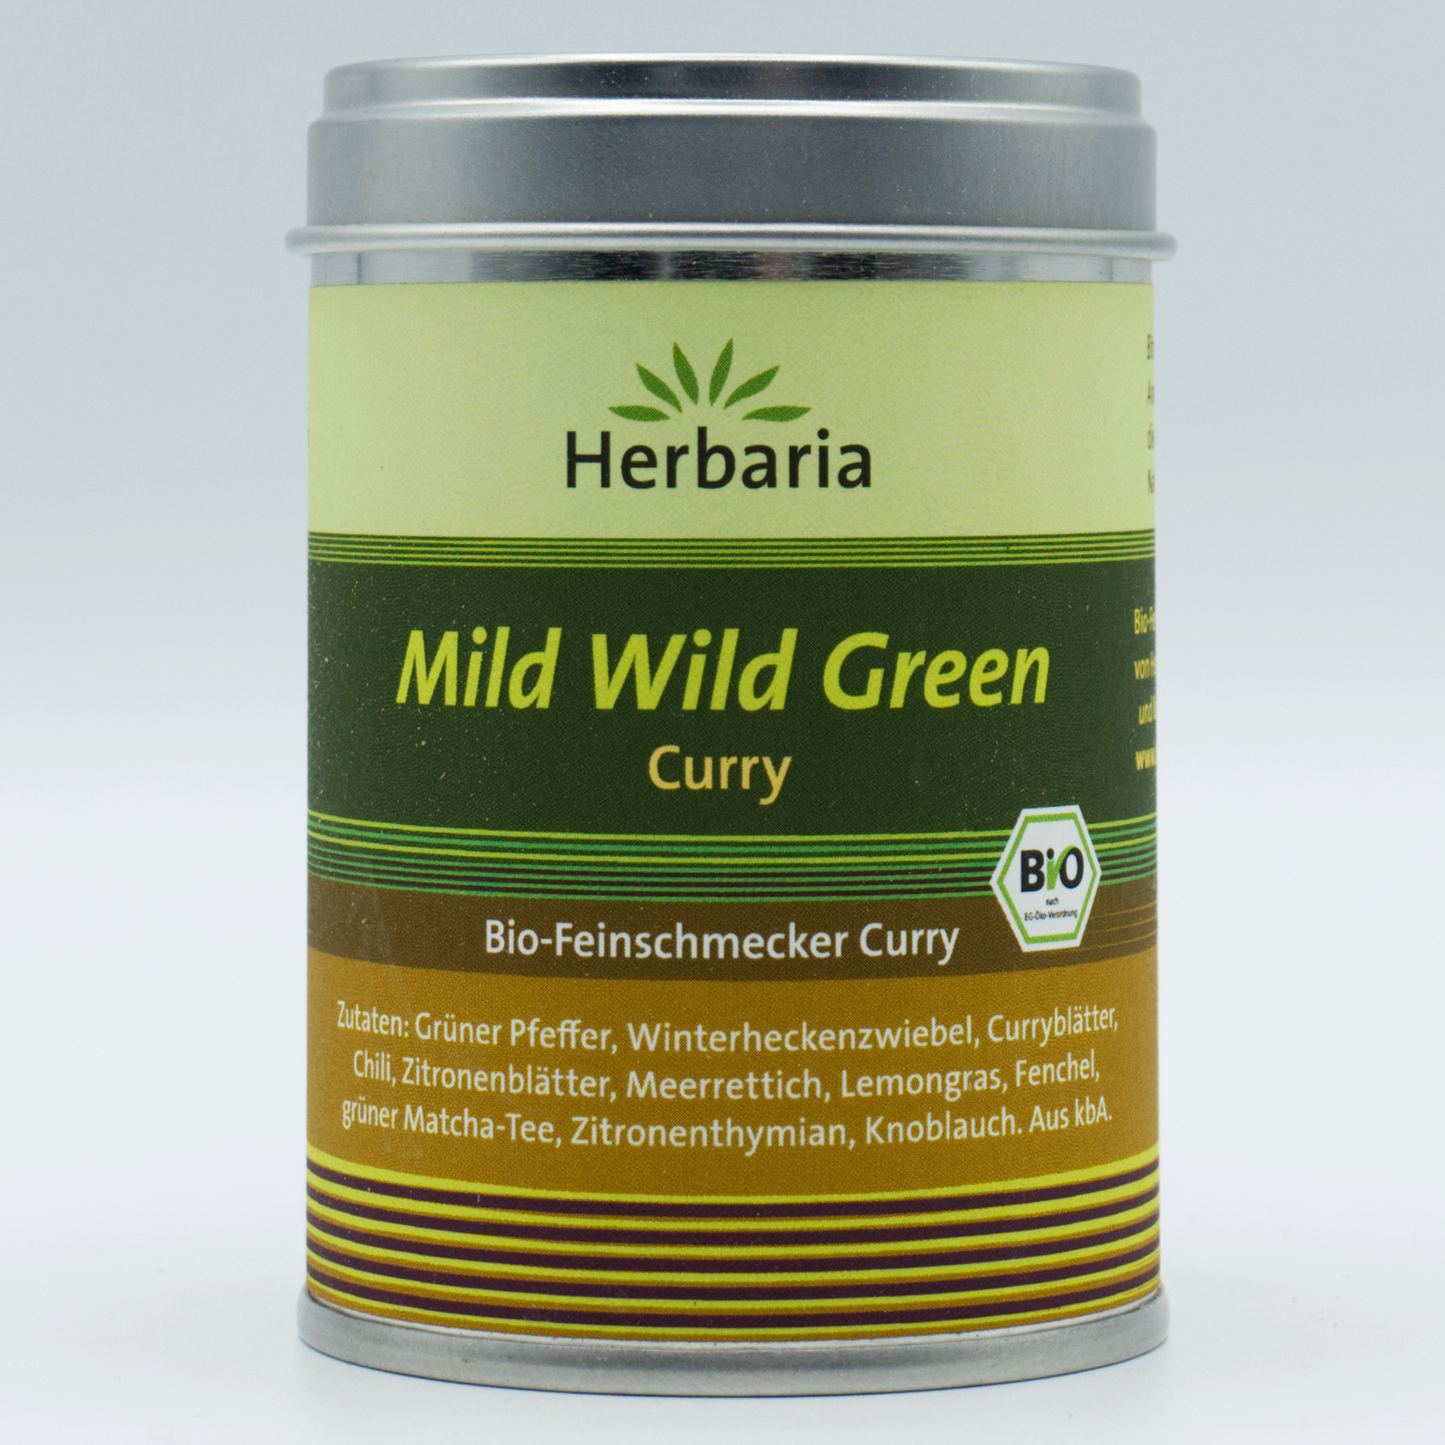 Mild Wild Green Curry Herbaria 70g